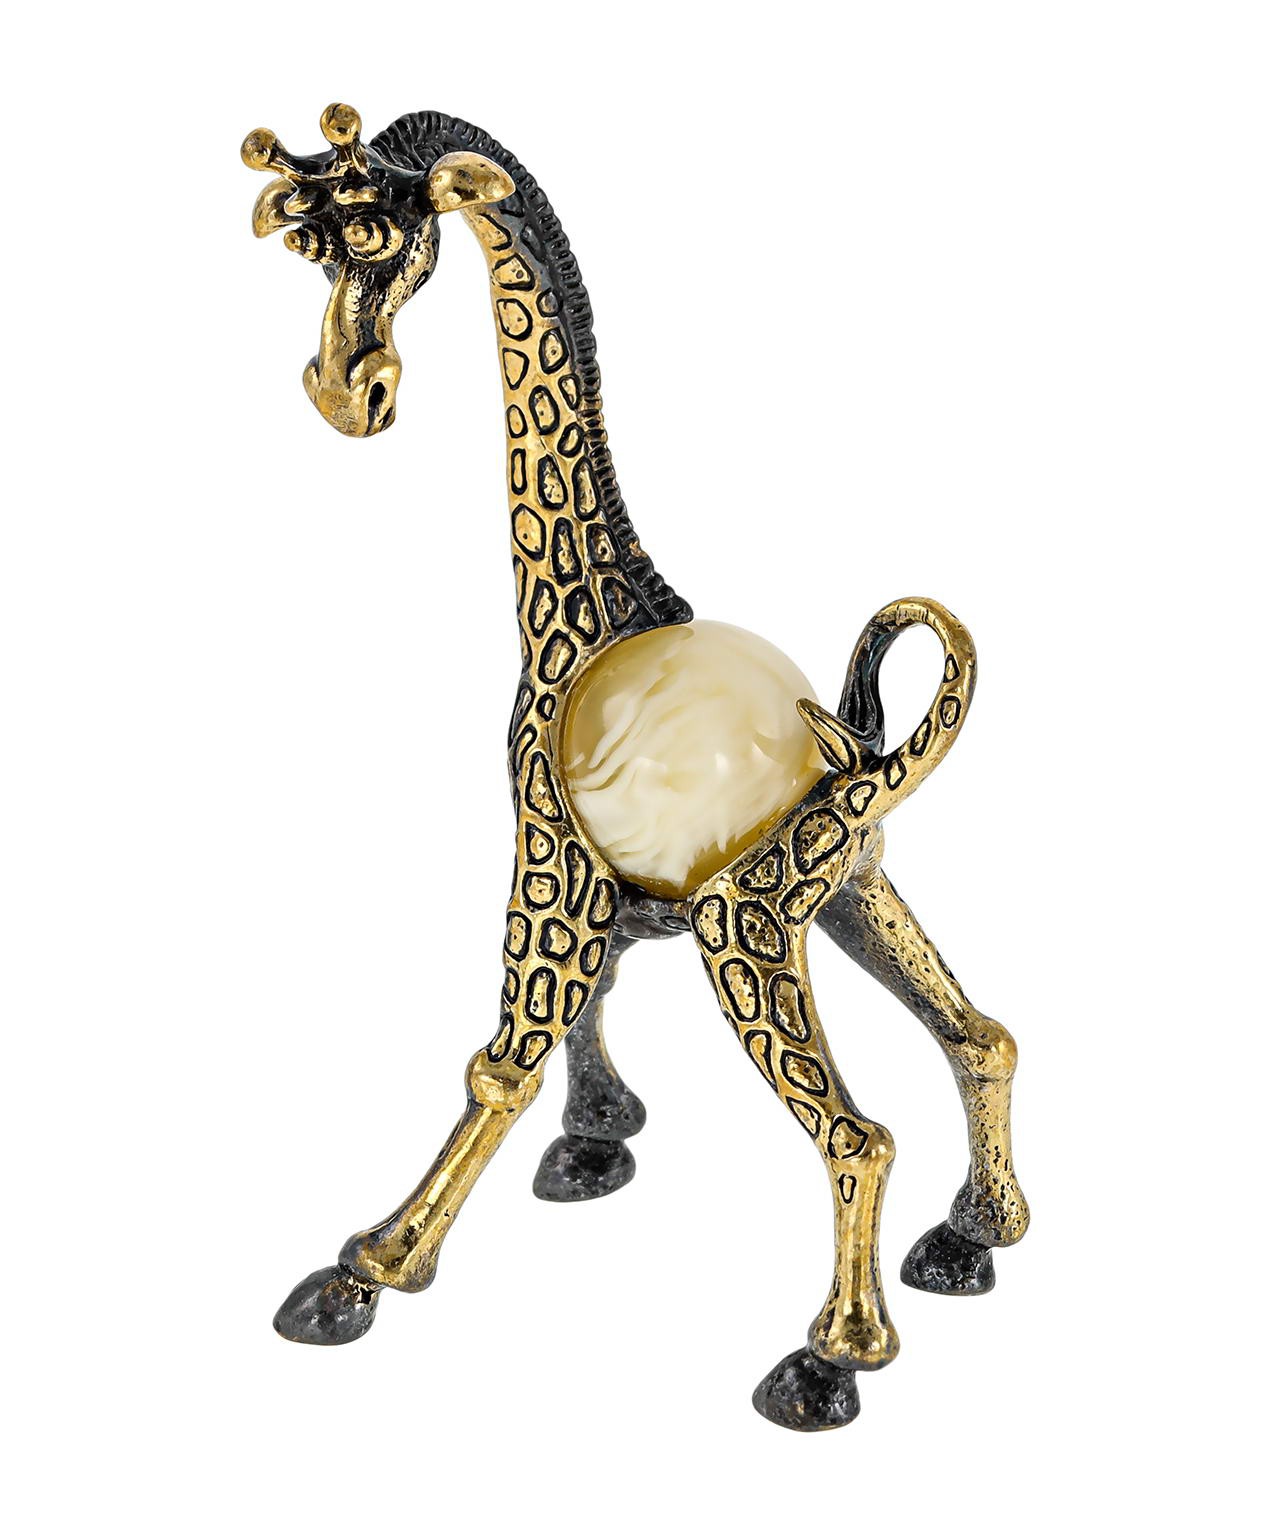 Жираф-мама 353